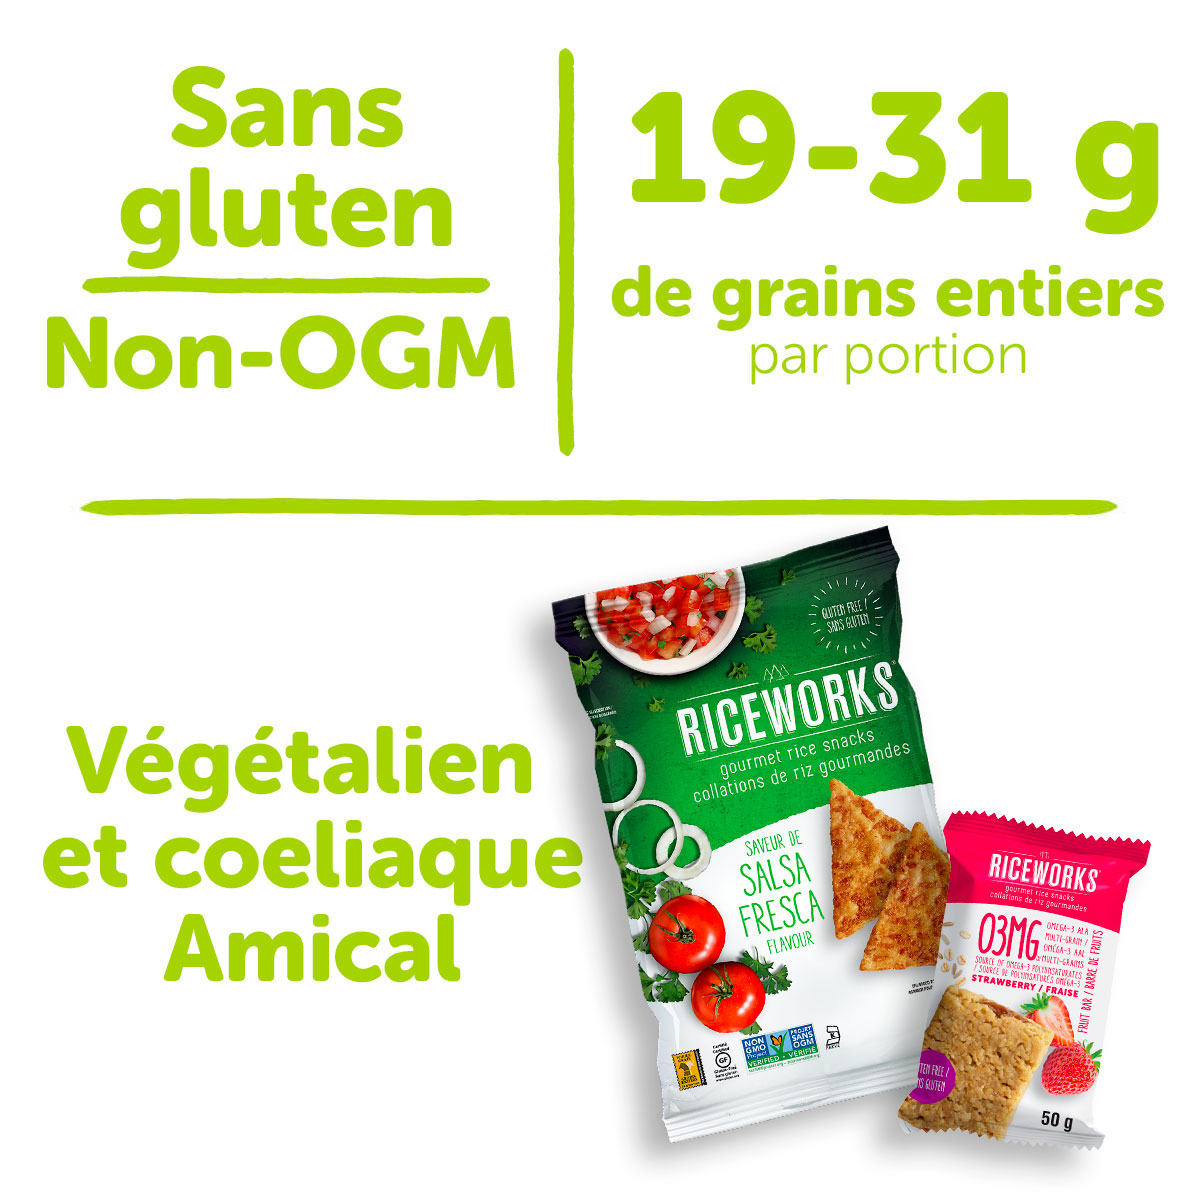 Sans gluten, Non-OGN, 15-19 g de grains entiers par portion, Végétalien et coeliaque Amical